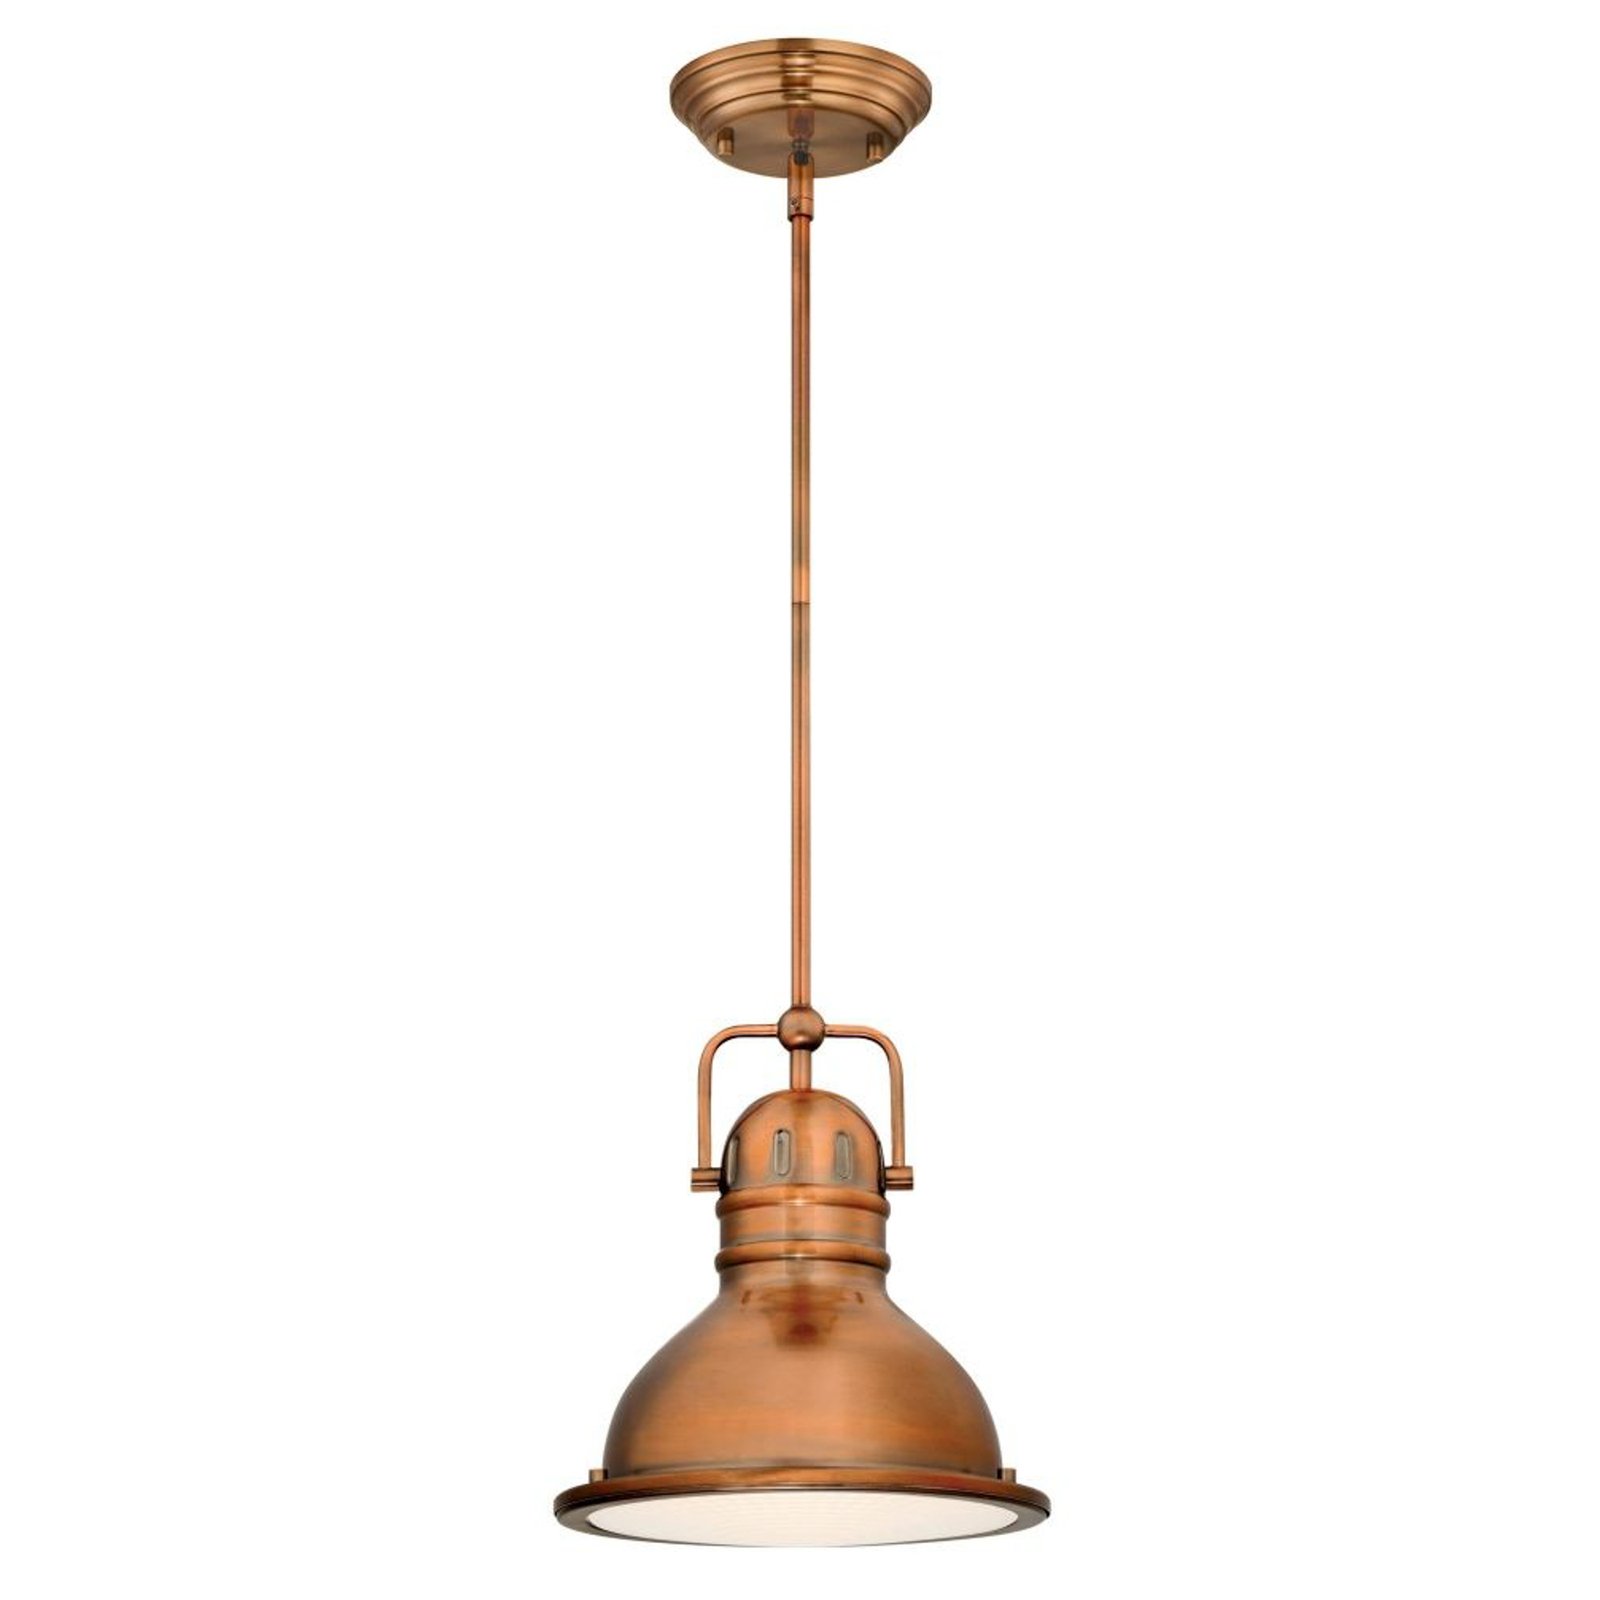 Lampa wisząca Westinghouse Boswell, kolor miedziany